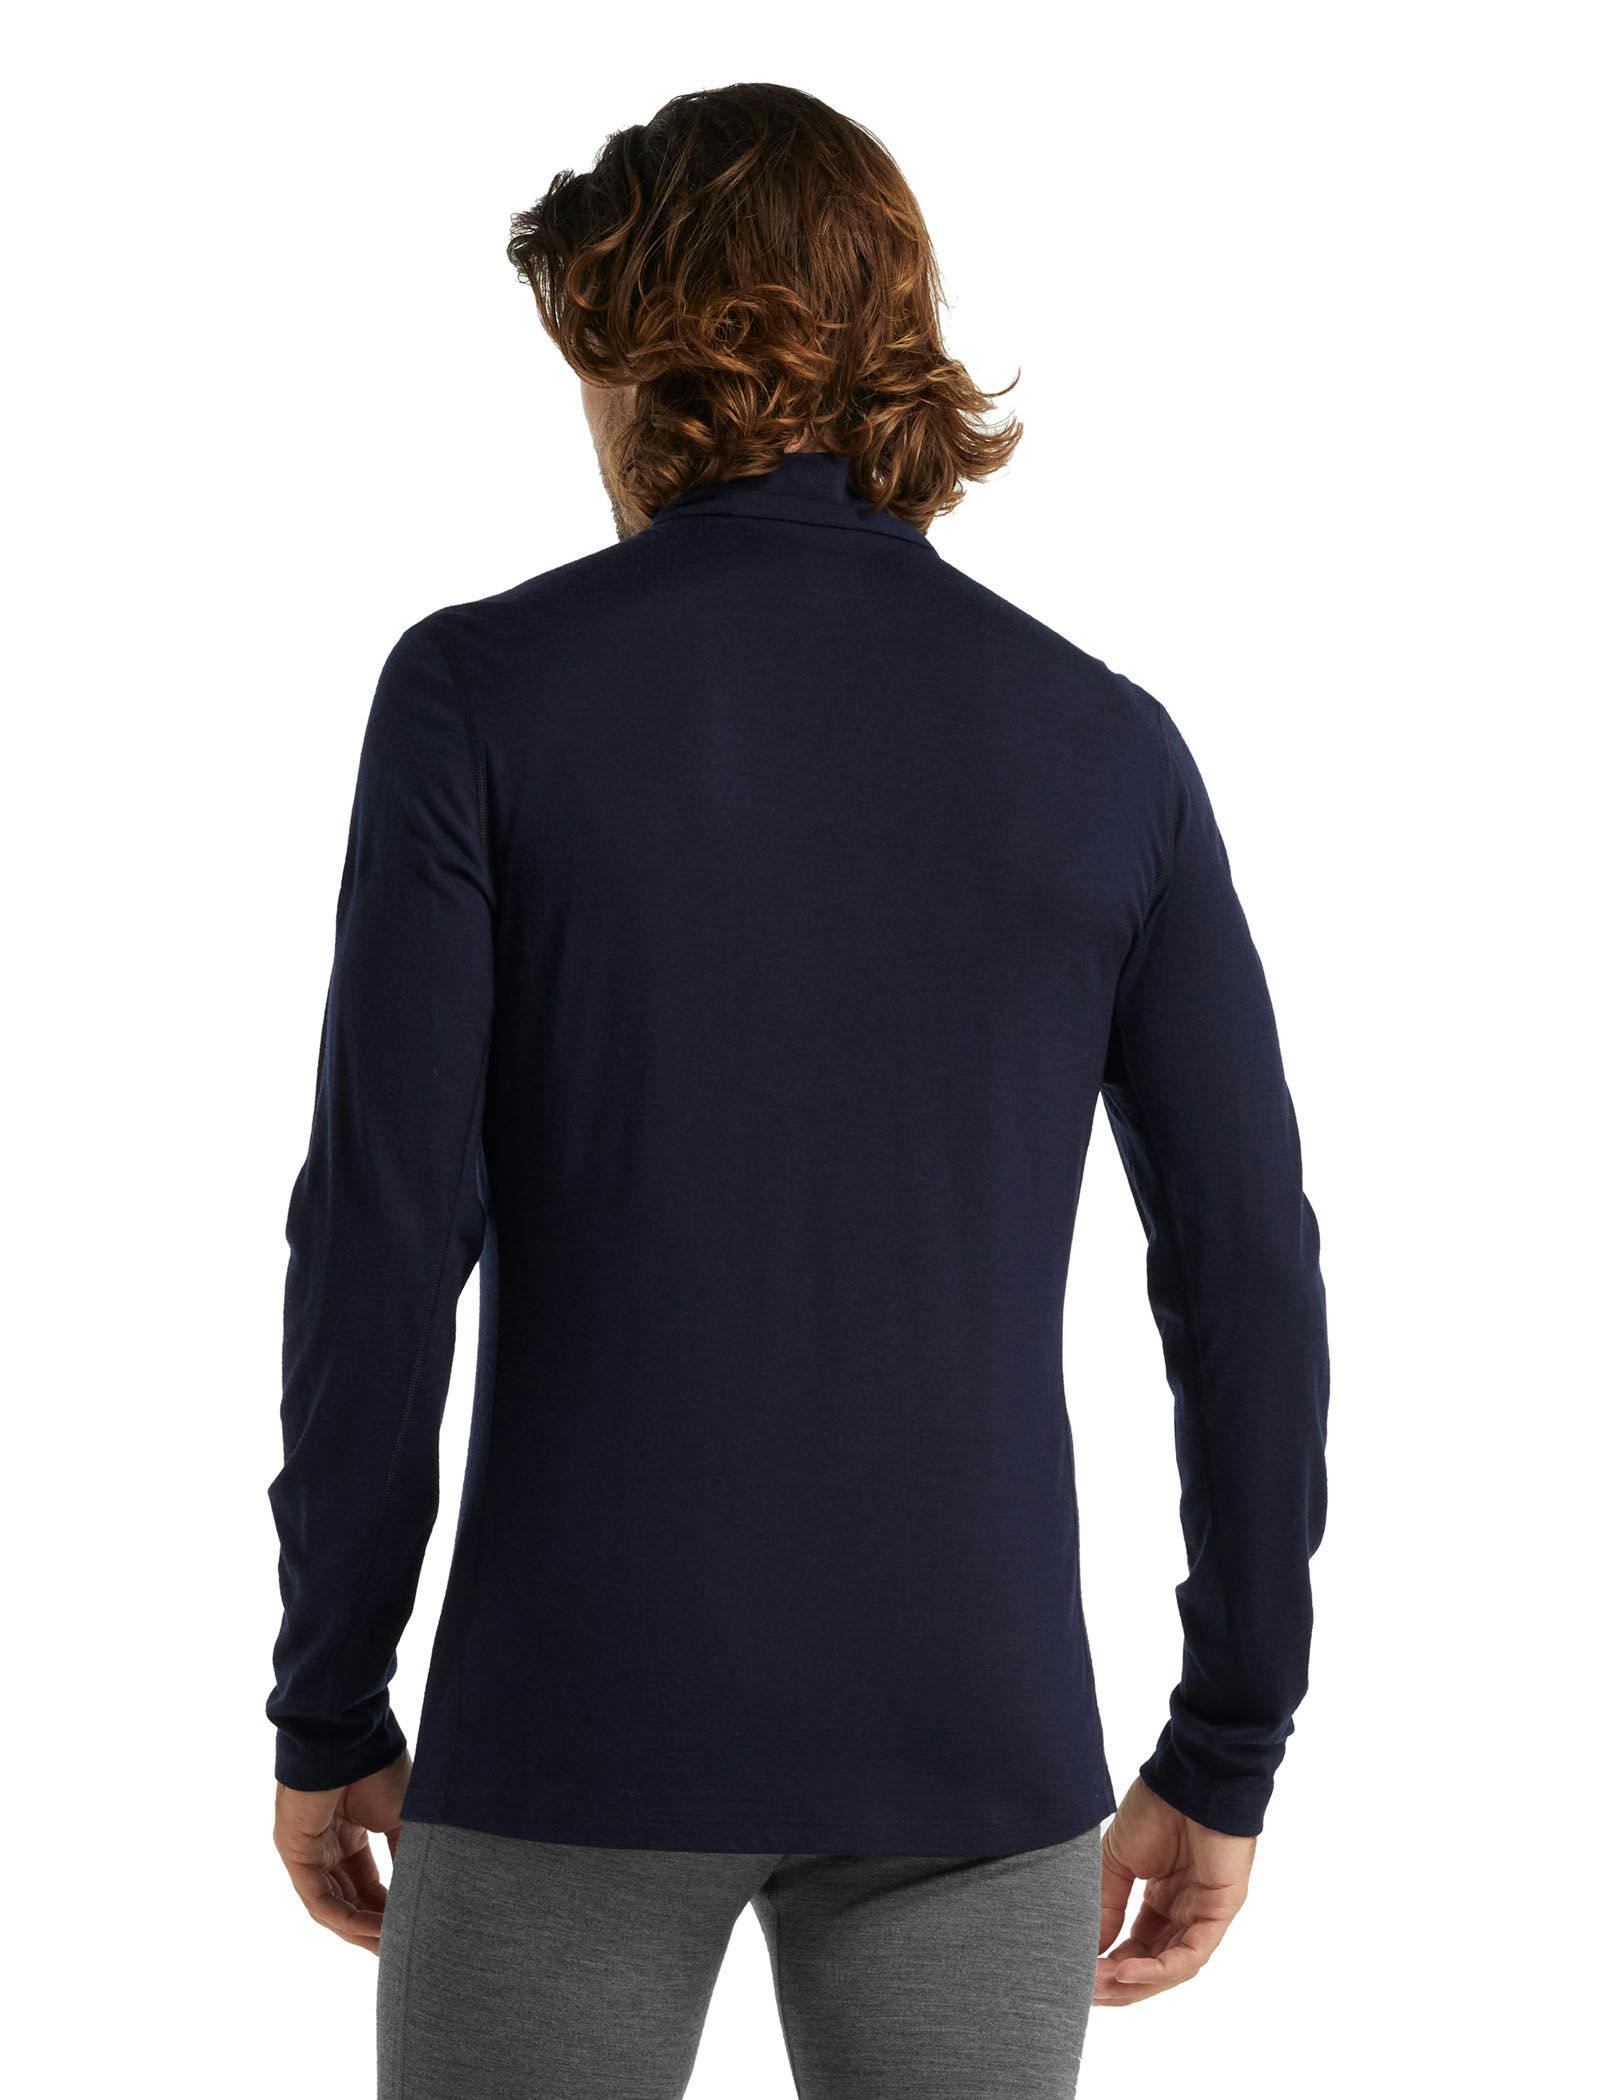 Icebreaker Men's 200 Oasis Long Sleeve Half Zip Baselayer Shirt